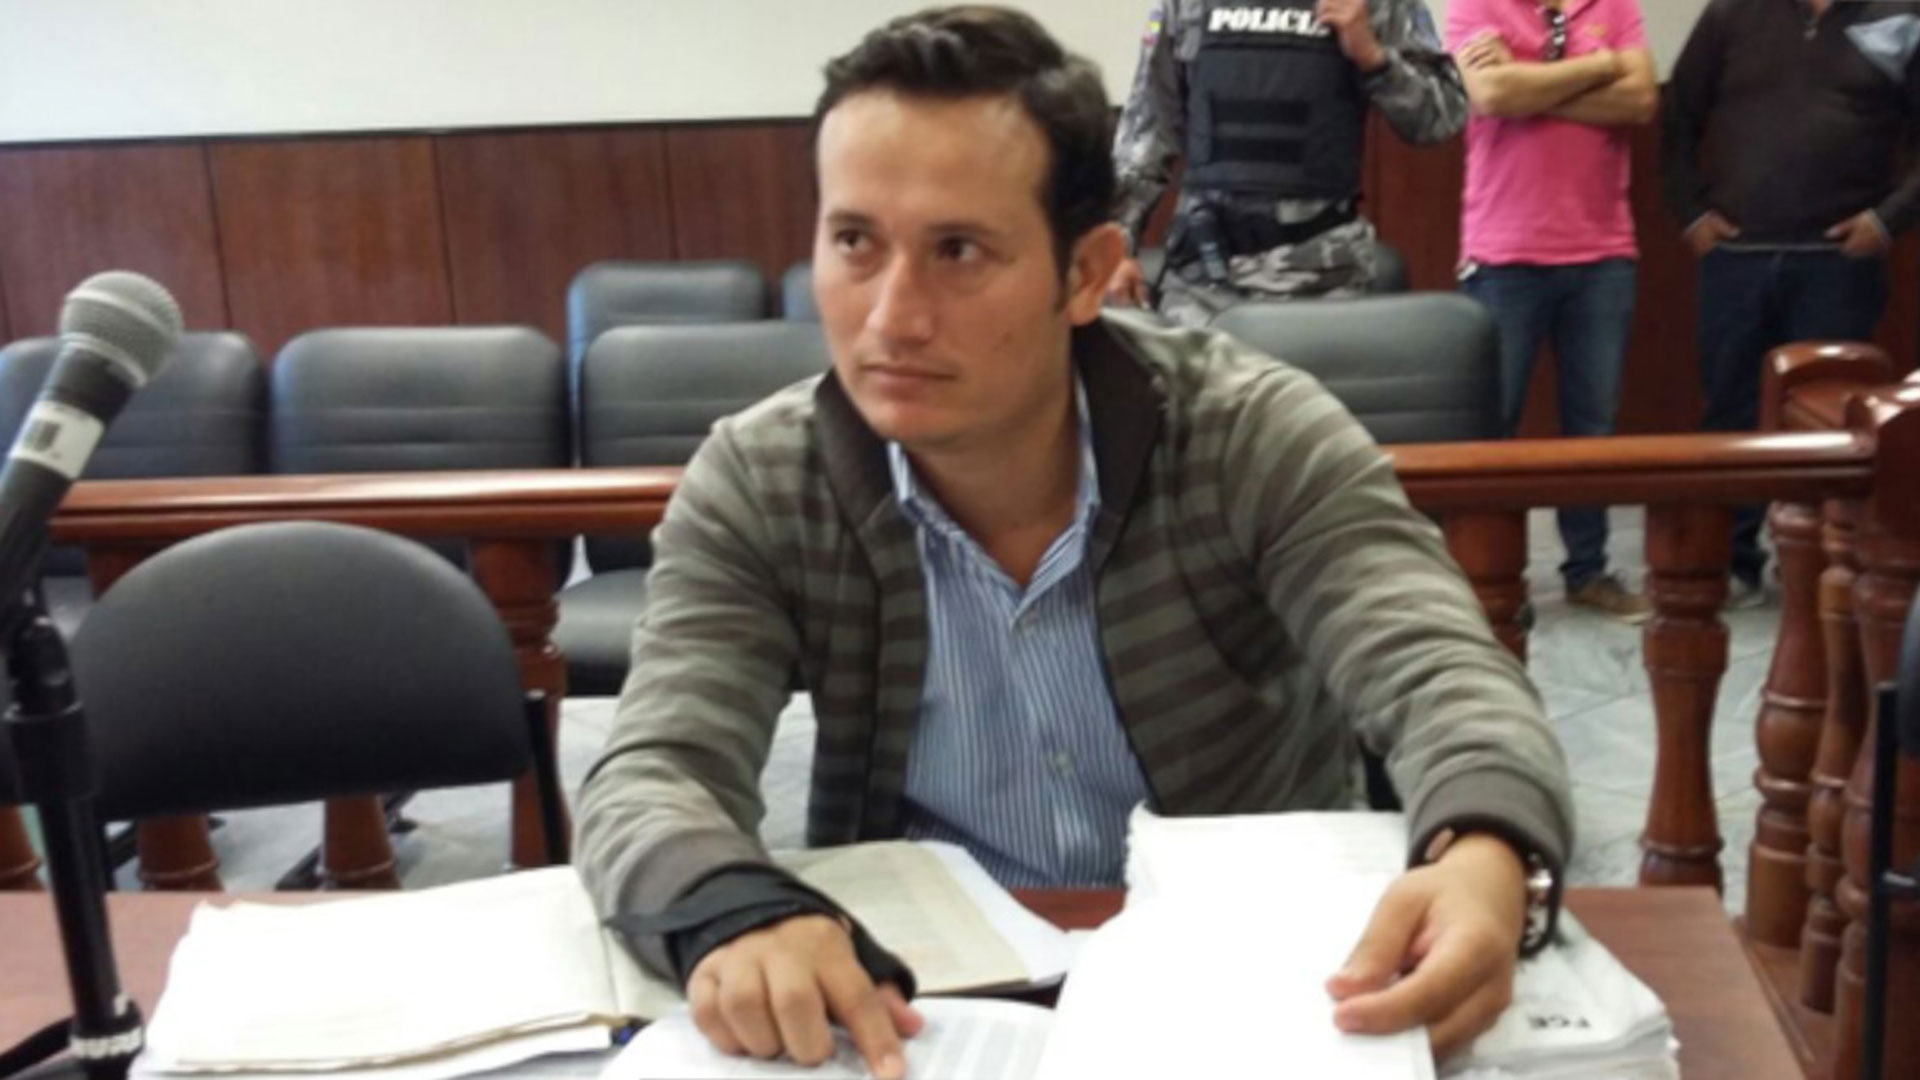 Asesinaron a tiros al fiscal Leonardo Palacios al salir de una audiencia en Ecuador